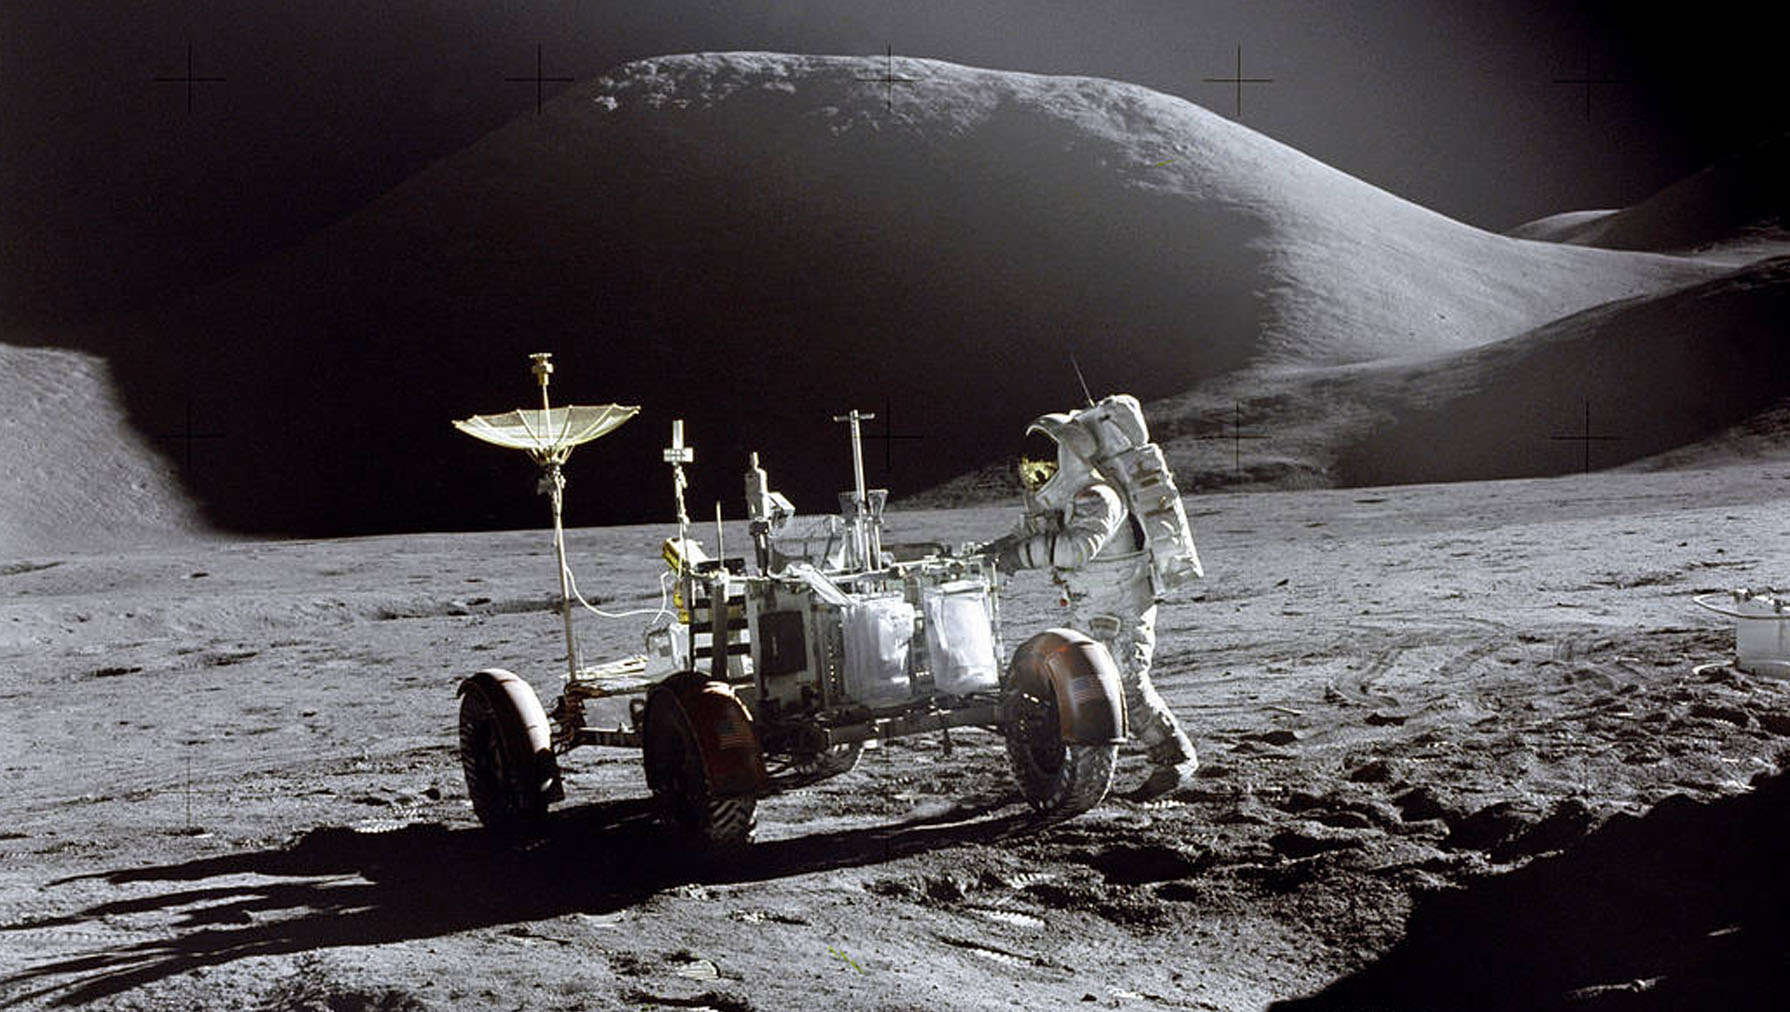 Apollo 15 moonwalk